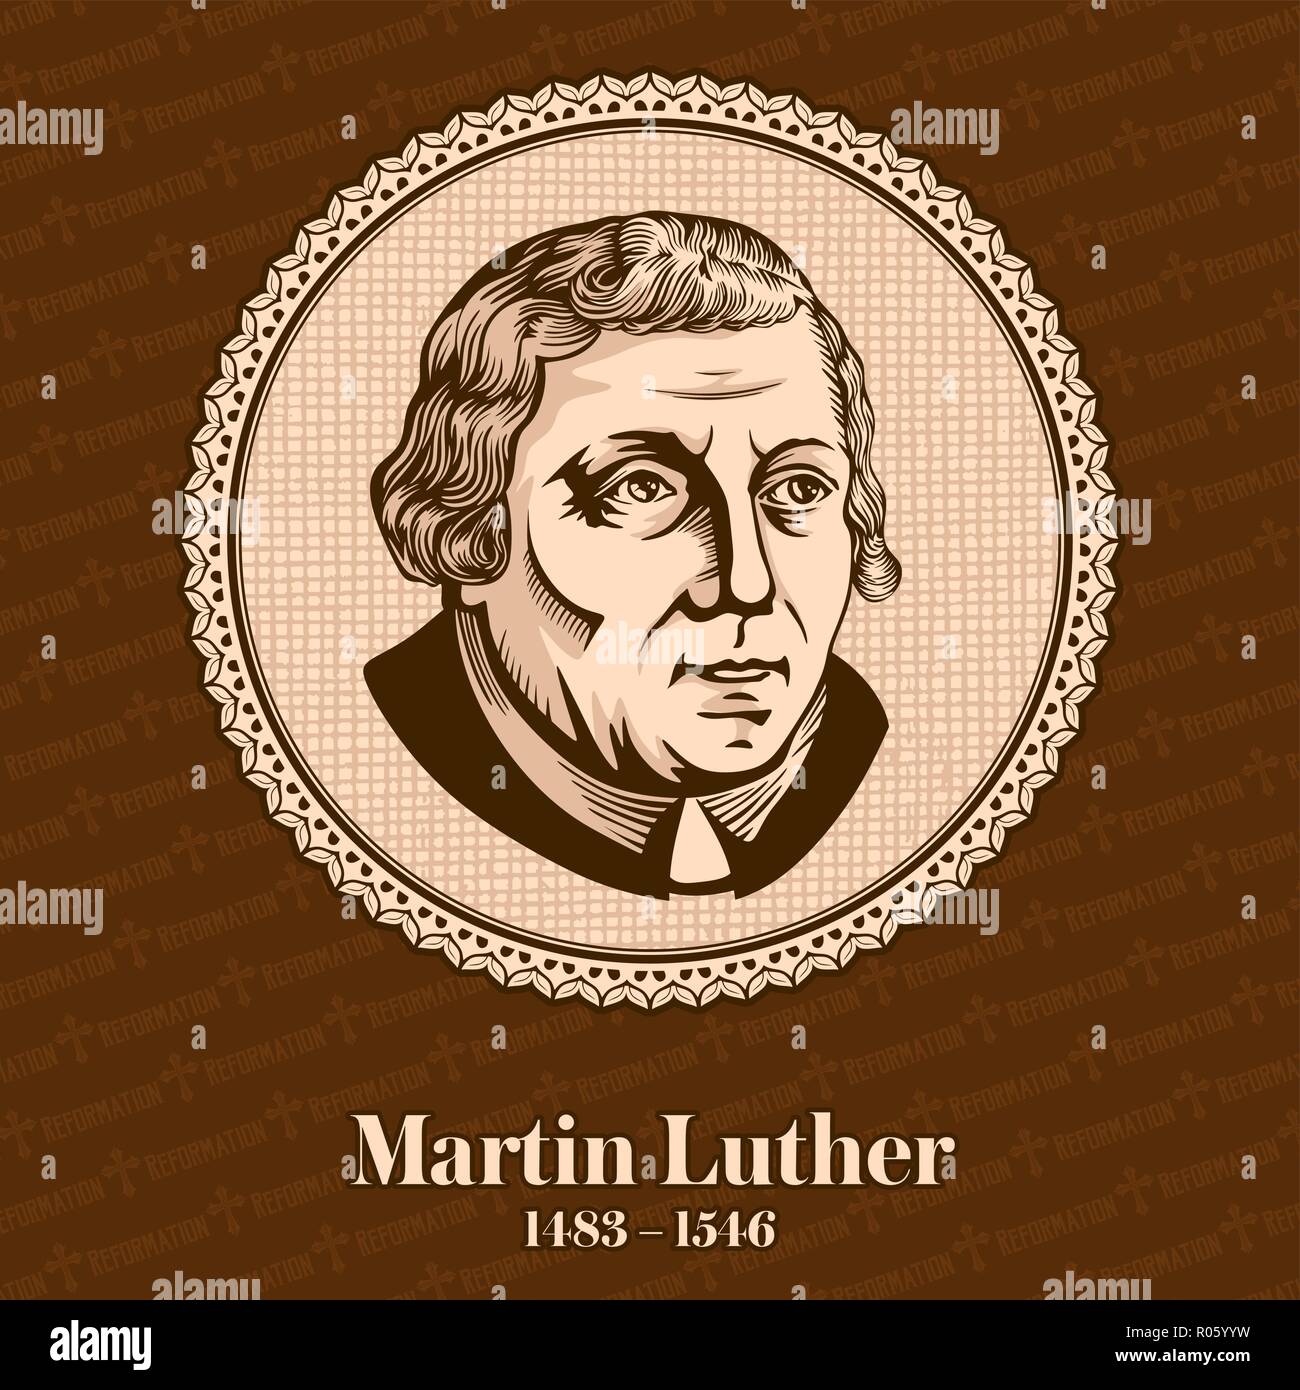 Martin Luther (1483 - 1546) était un professeur de théologie, compositeur, prêtre, moine, et une figure de la Réforme protestante. Illustration de Vecteur